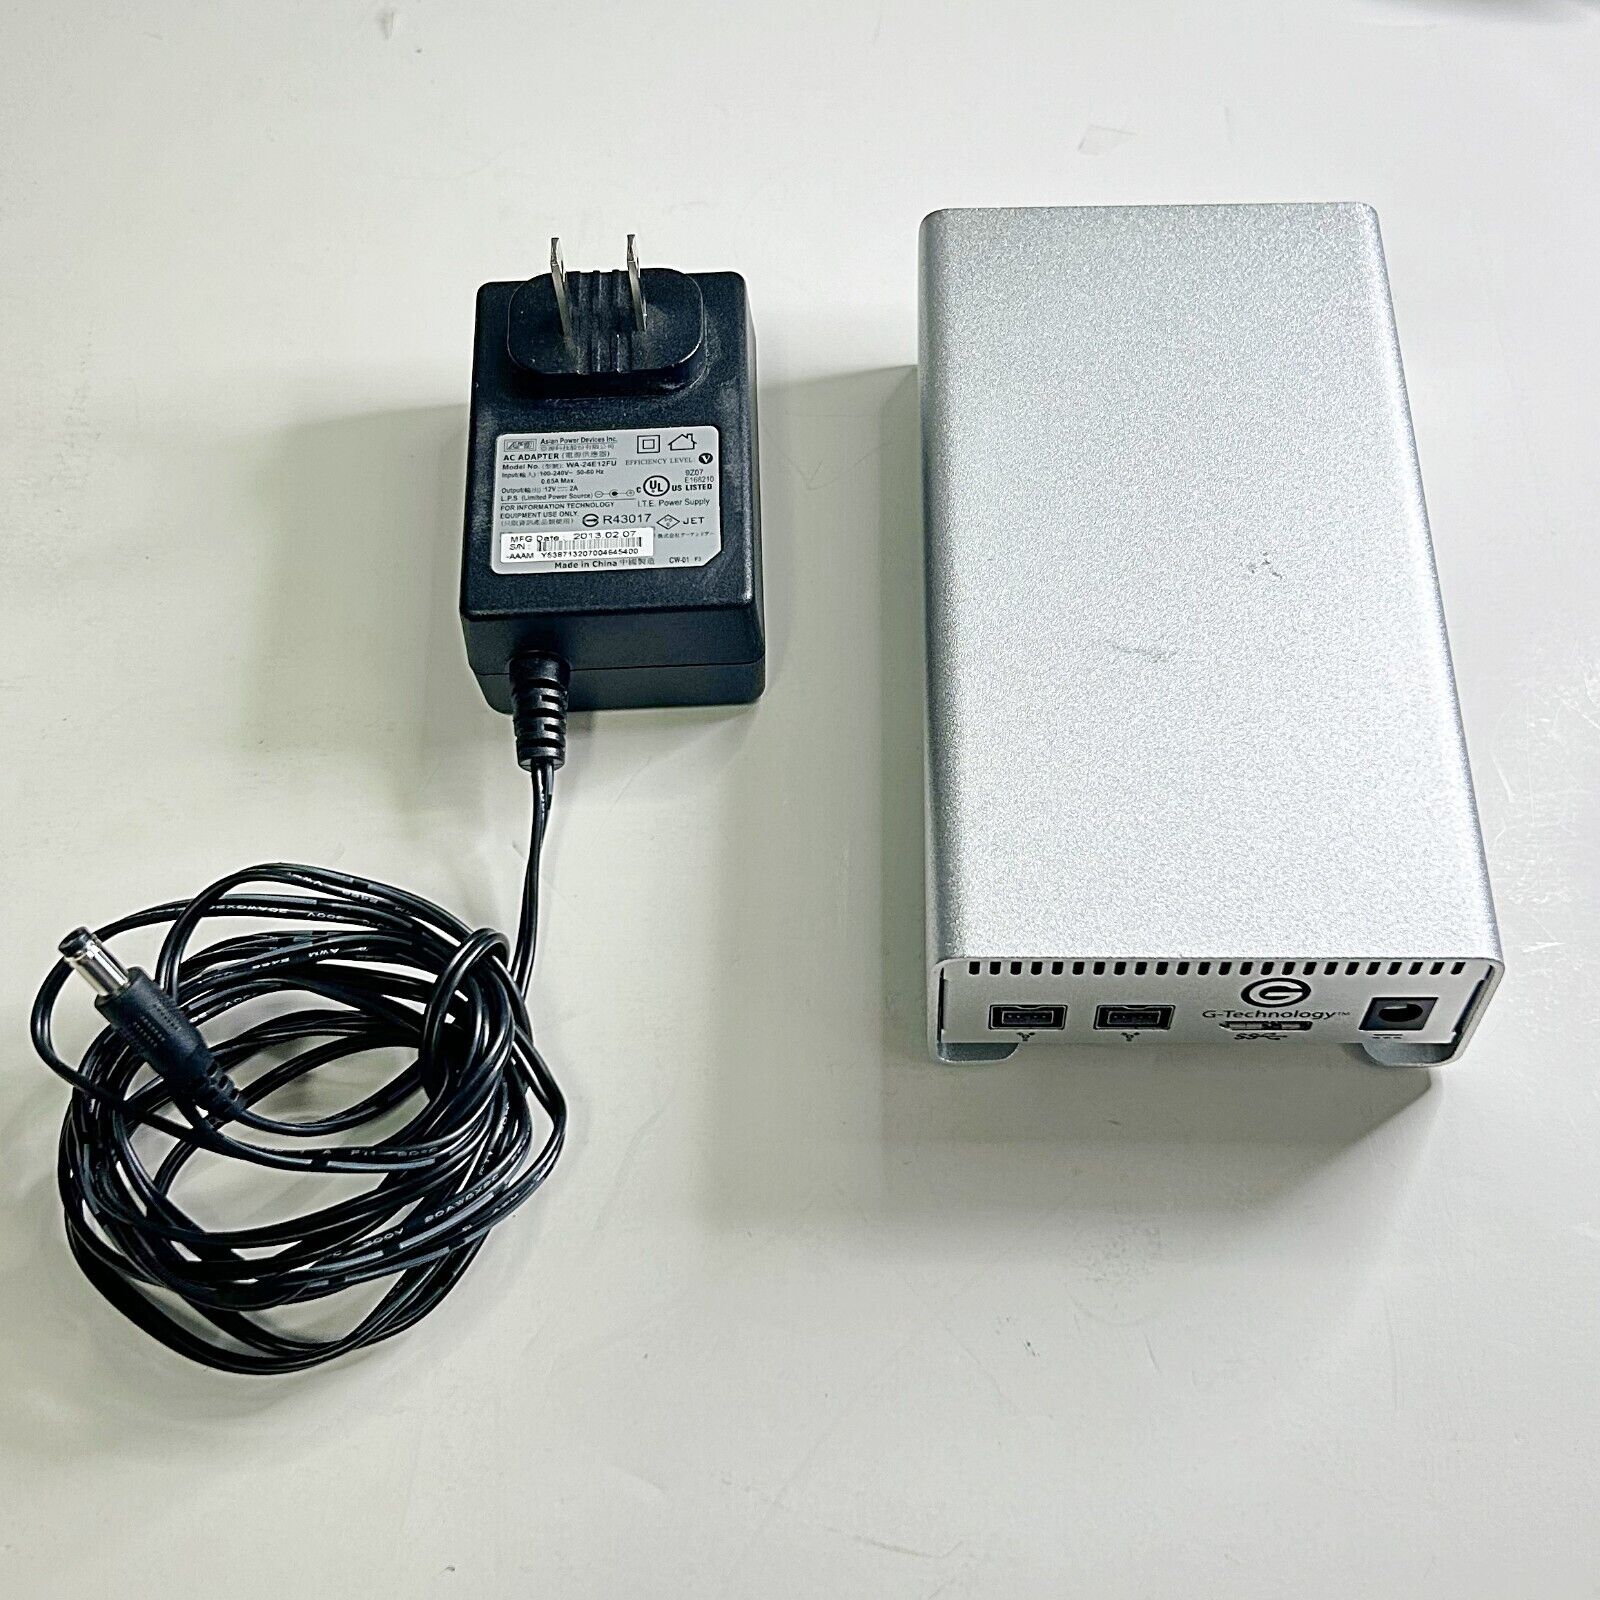 G-Raid mini 1TB USB 3.0 Fire Wire External Hard Disk 0G02608